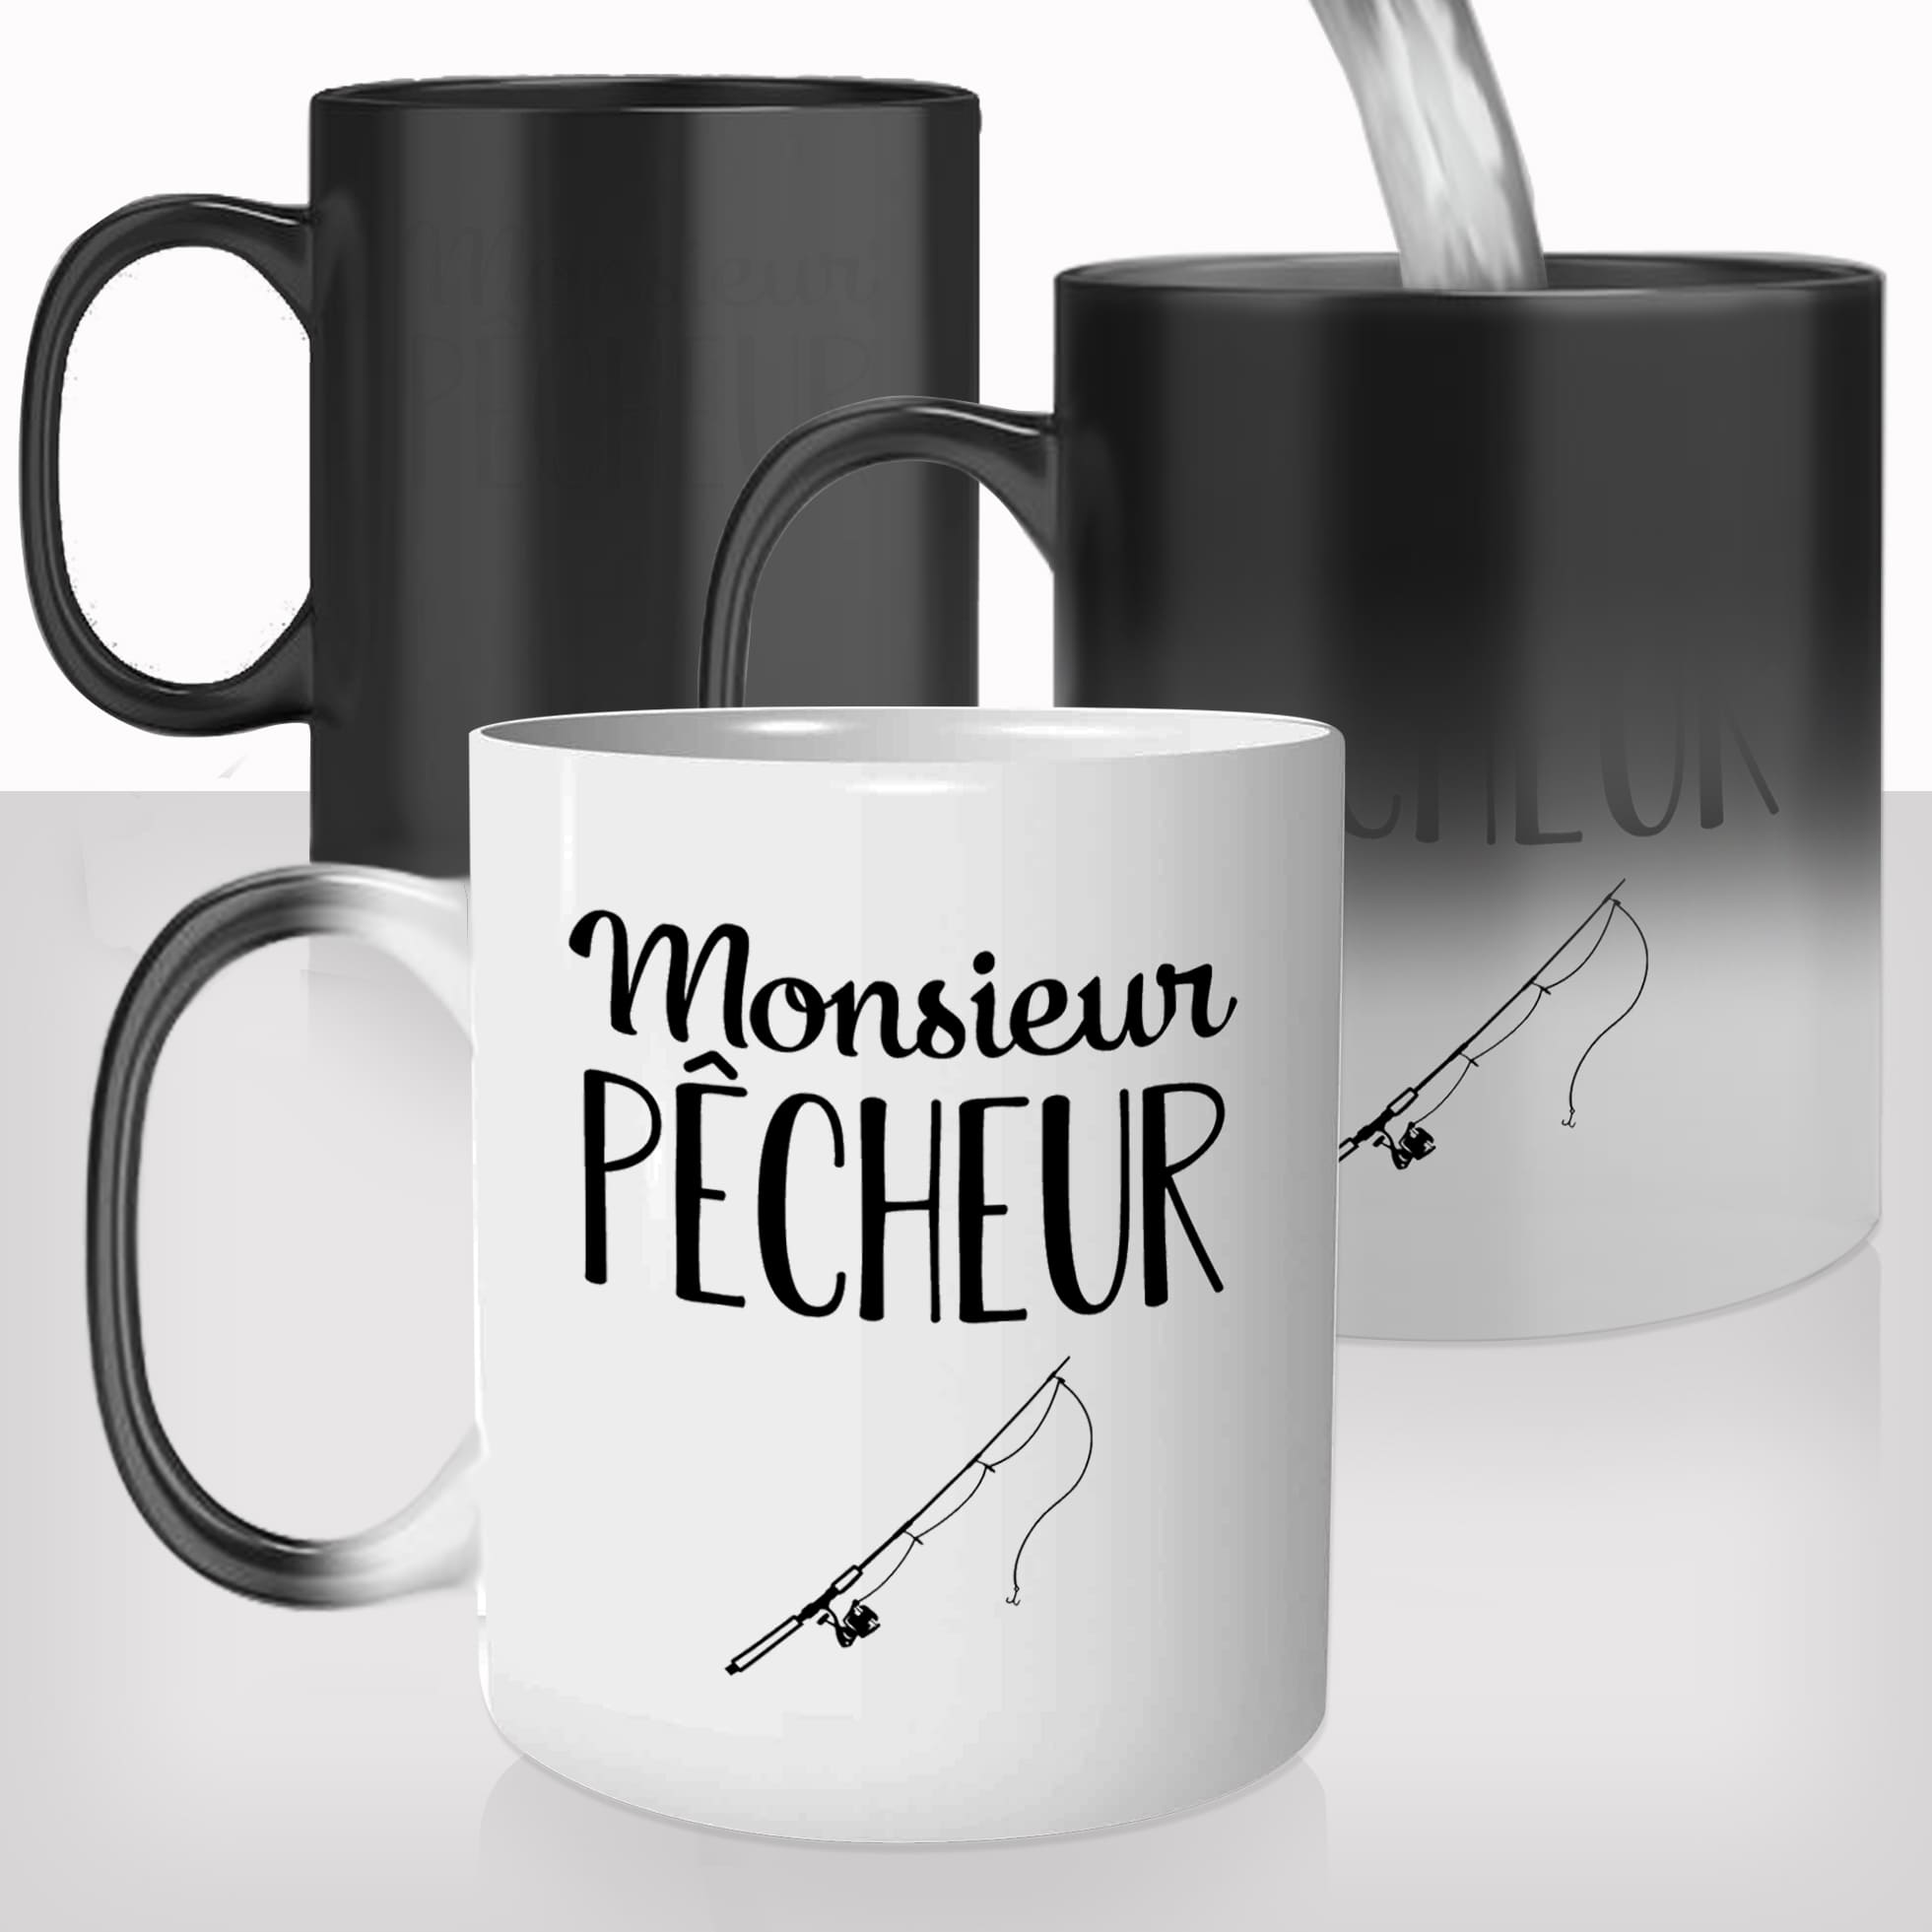 mug-magique-tasse-magic-thermo-reactif-homme-monsieur-pêcheur-peche-passion-bateau-photo-personnalisable-offrir-cadeau-original-fun